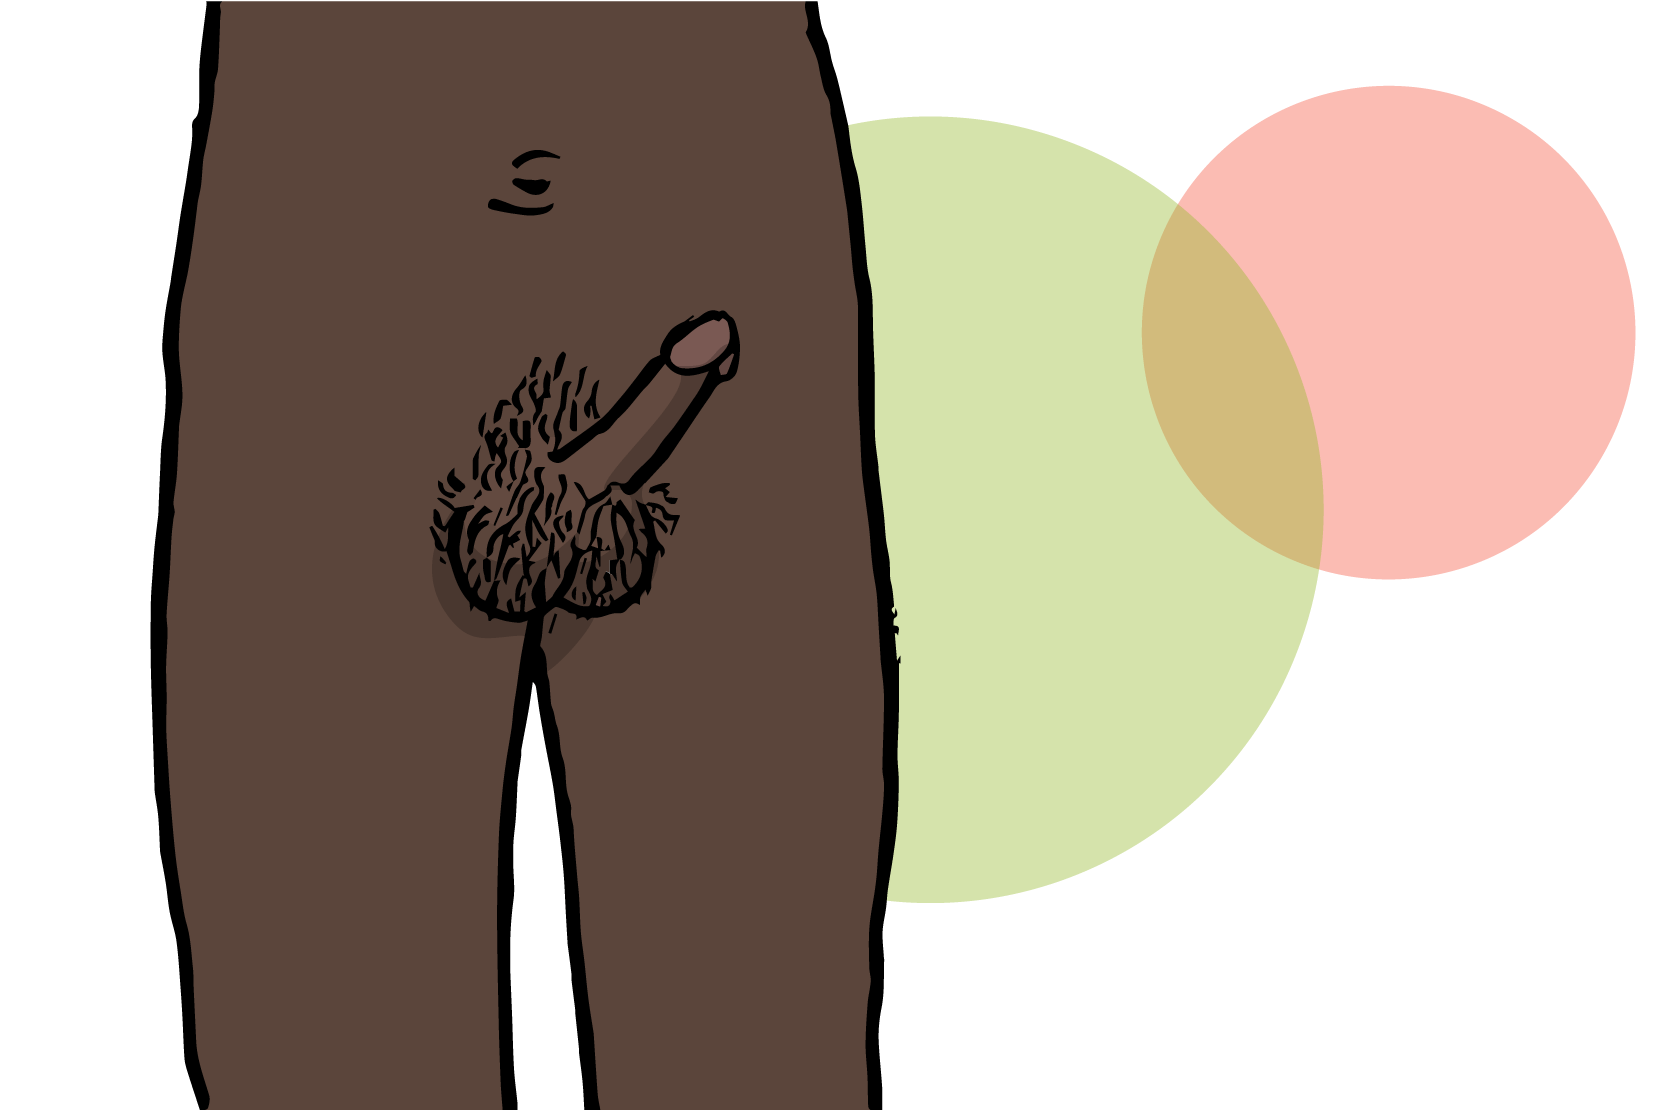 En penis som har stånd, illustration.